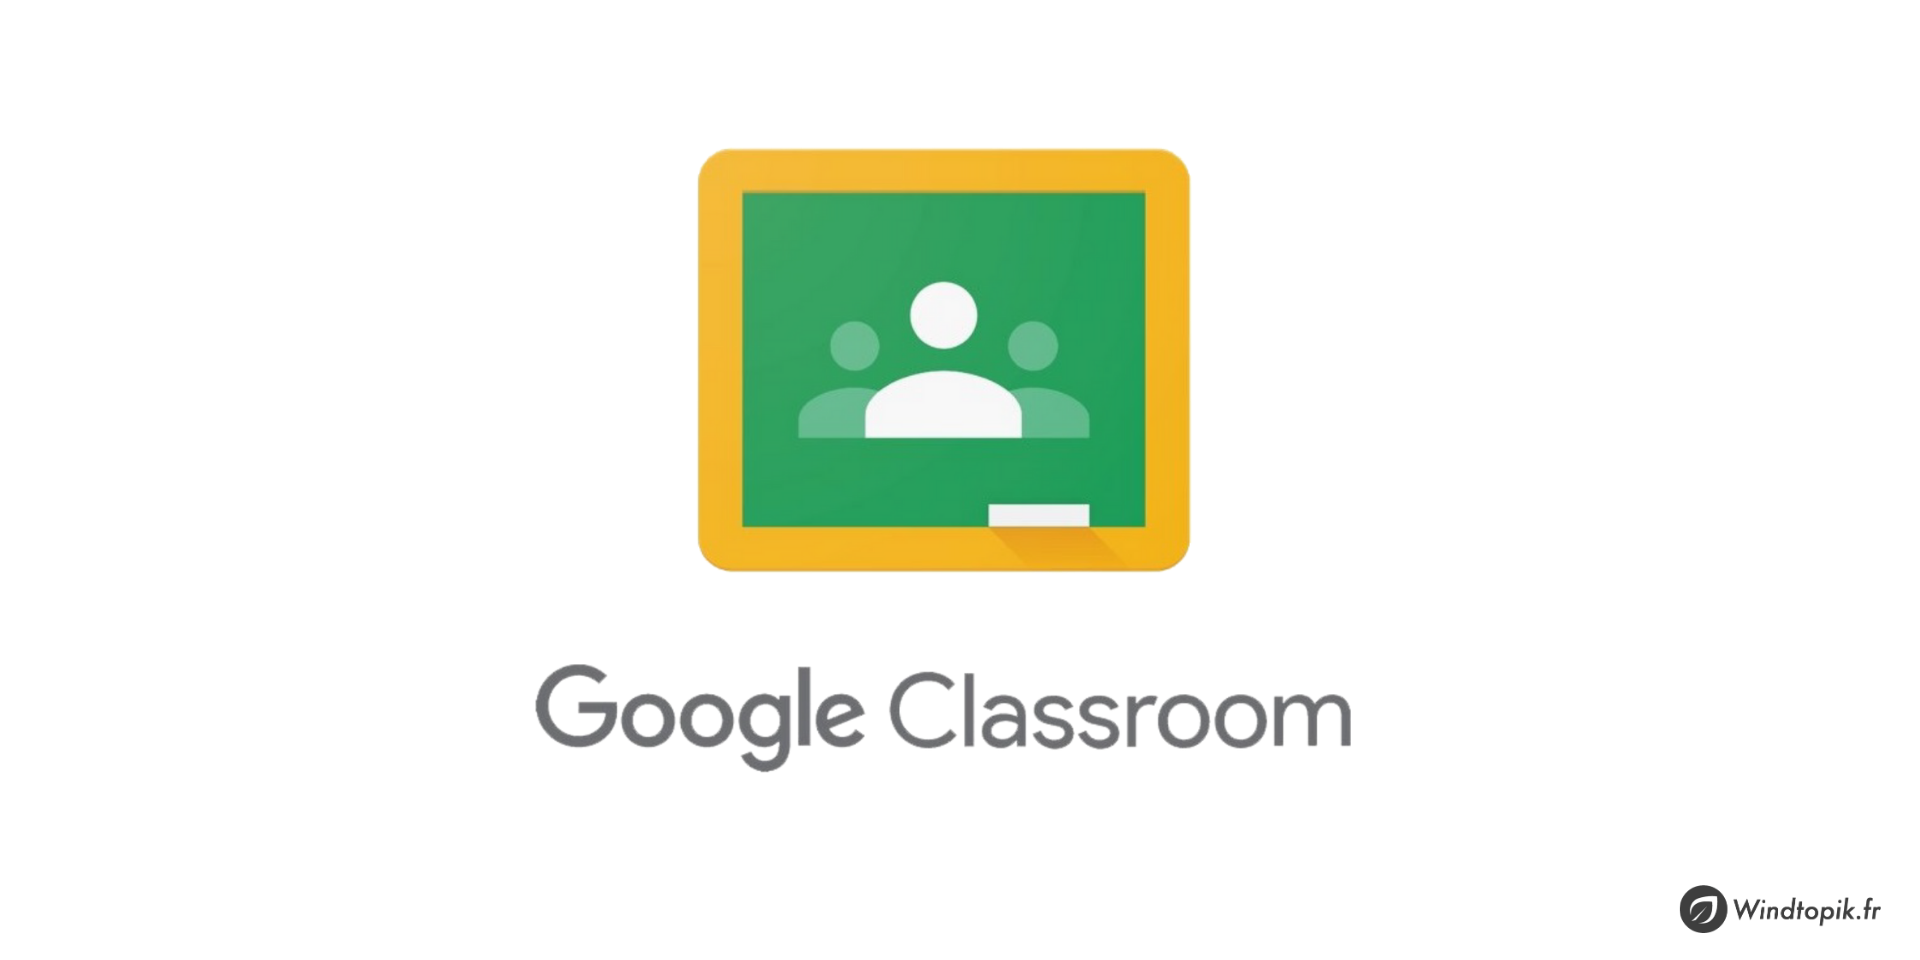 Découvrez et utilisez Google Classroom!